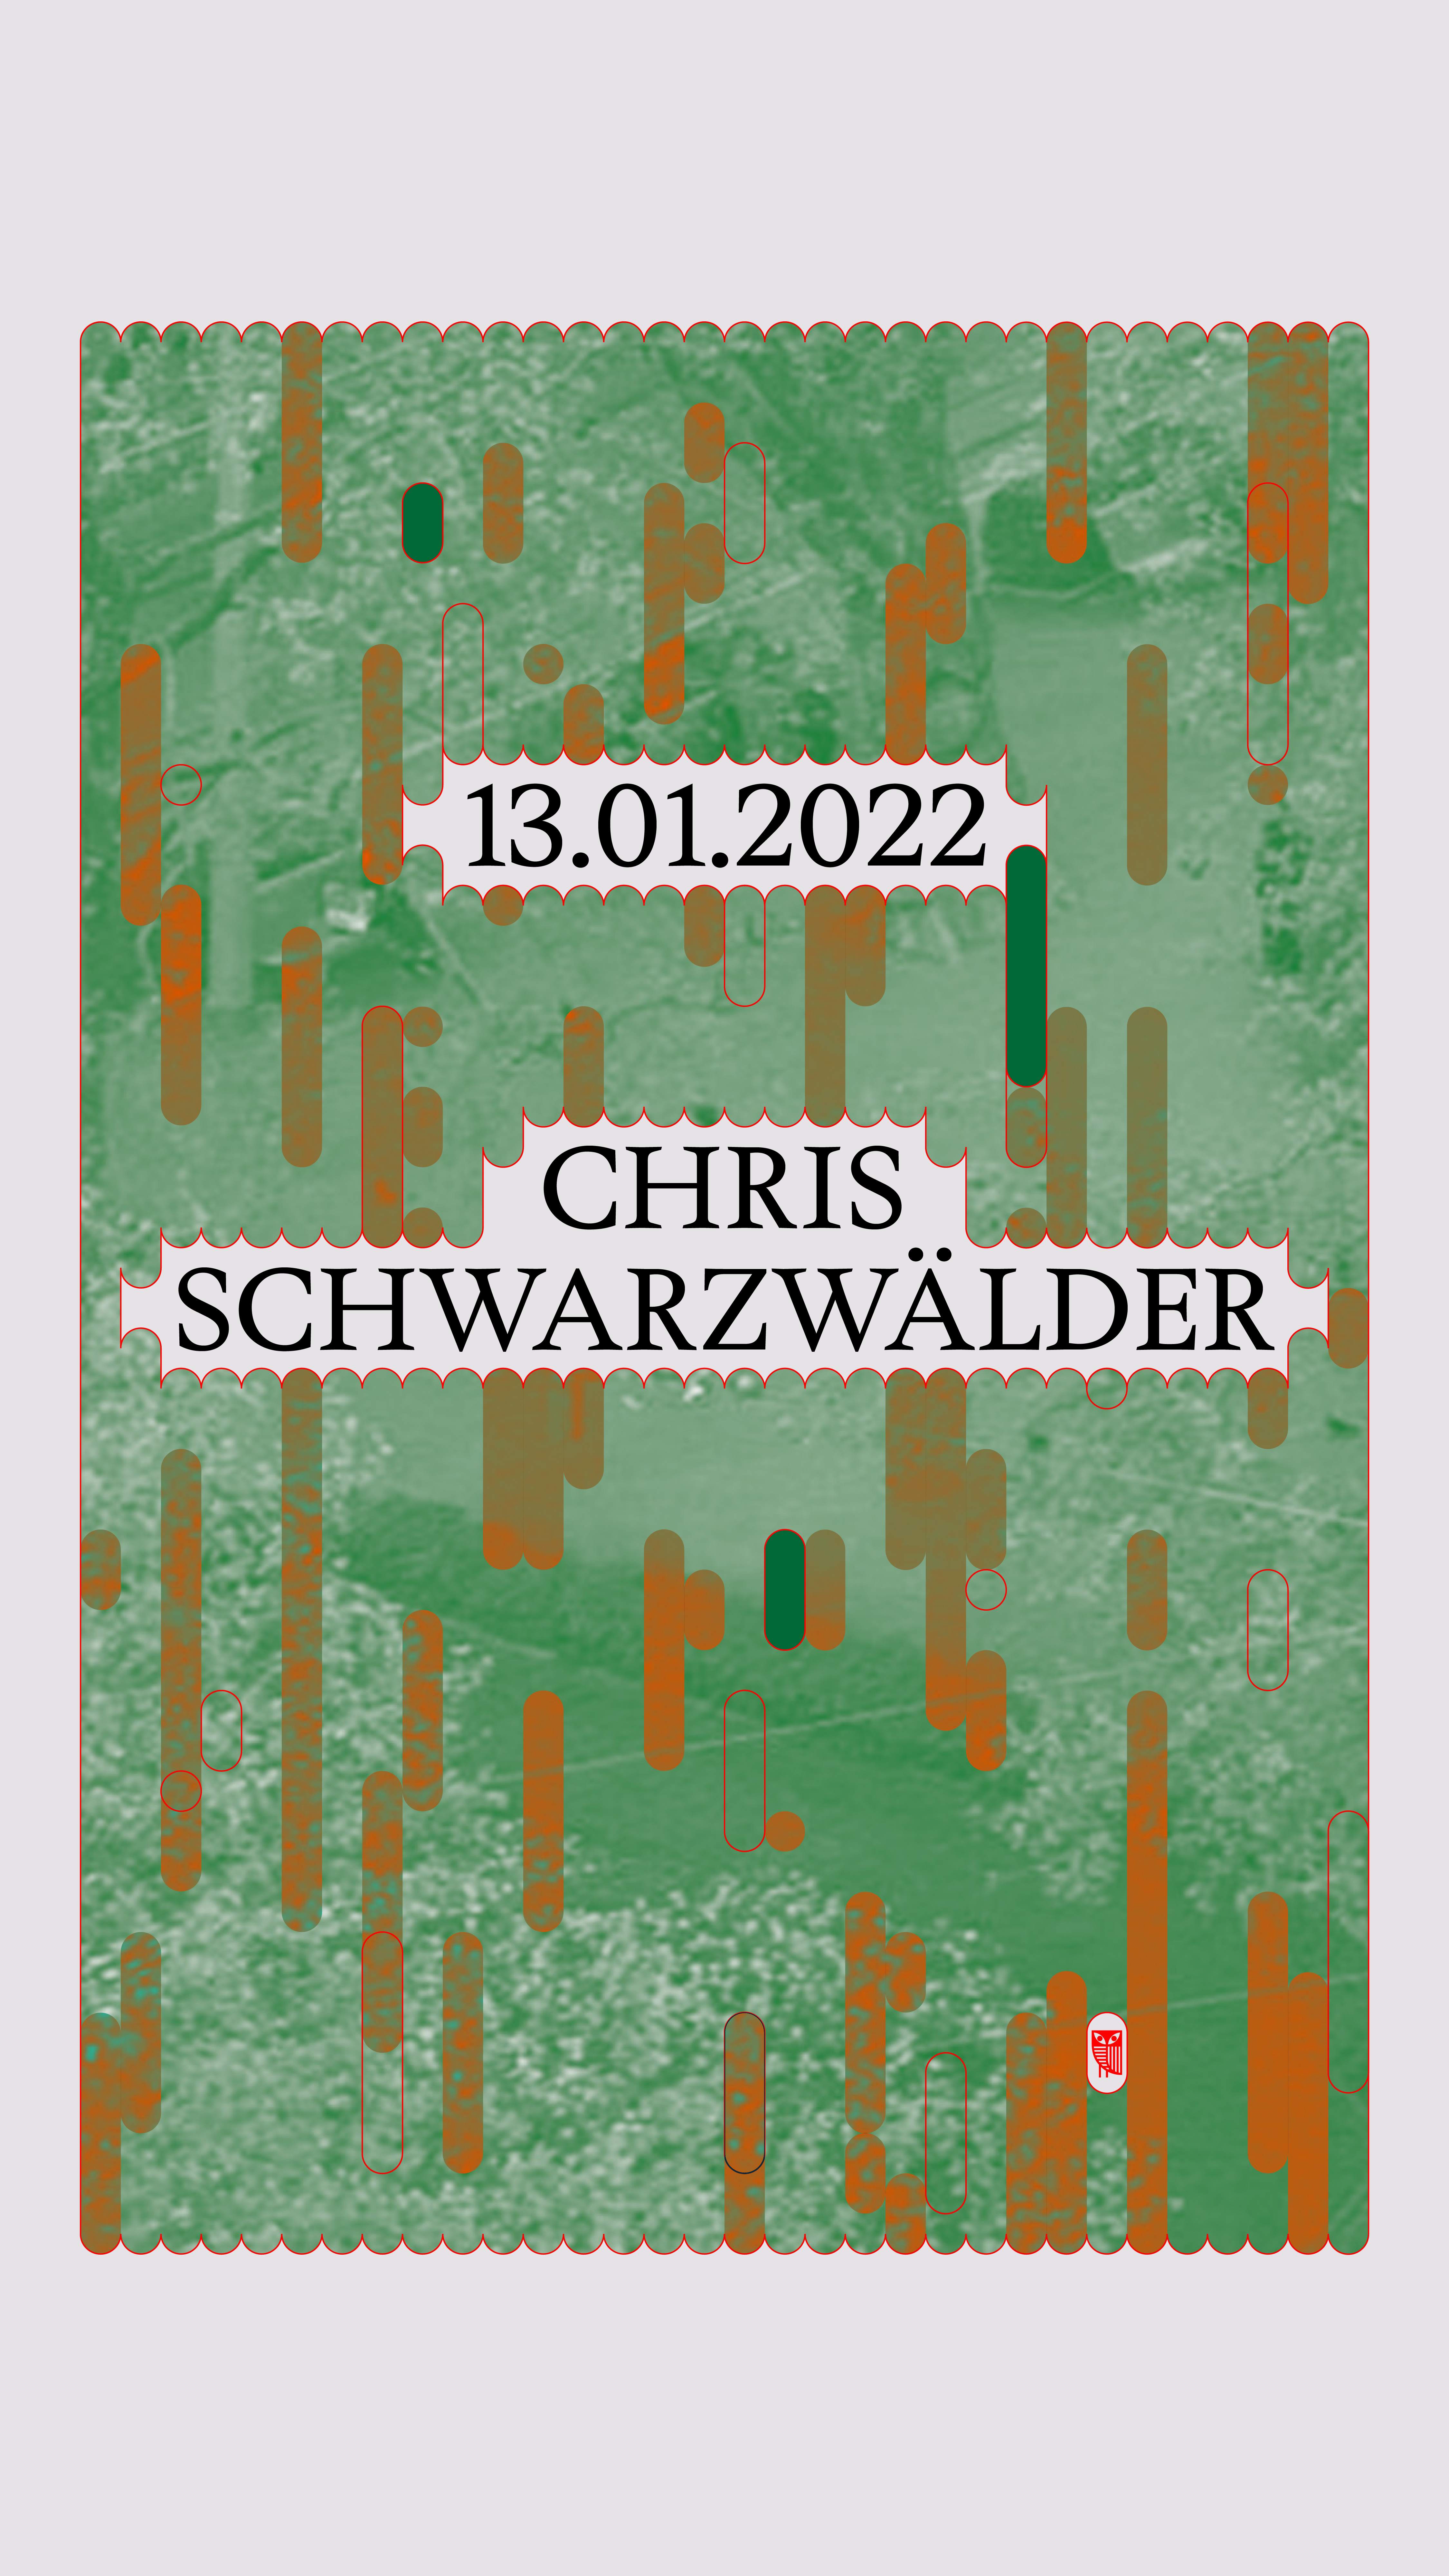 Chris Schwarzwälder - フライヤー表